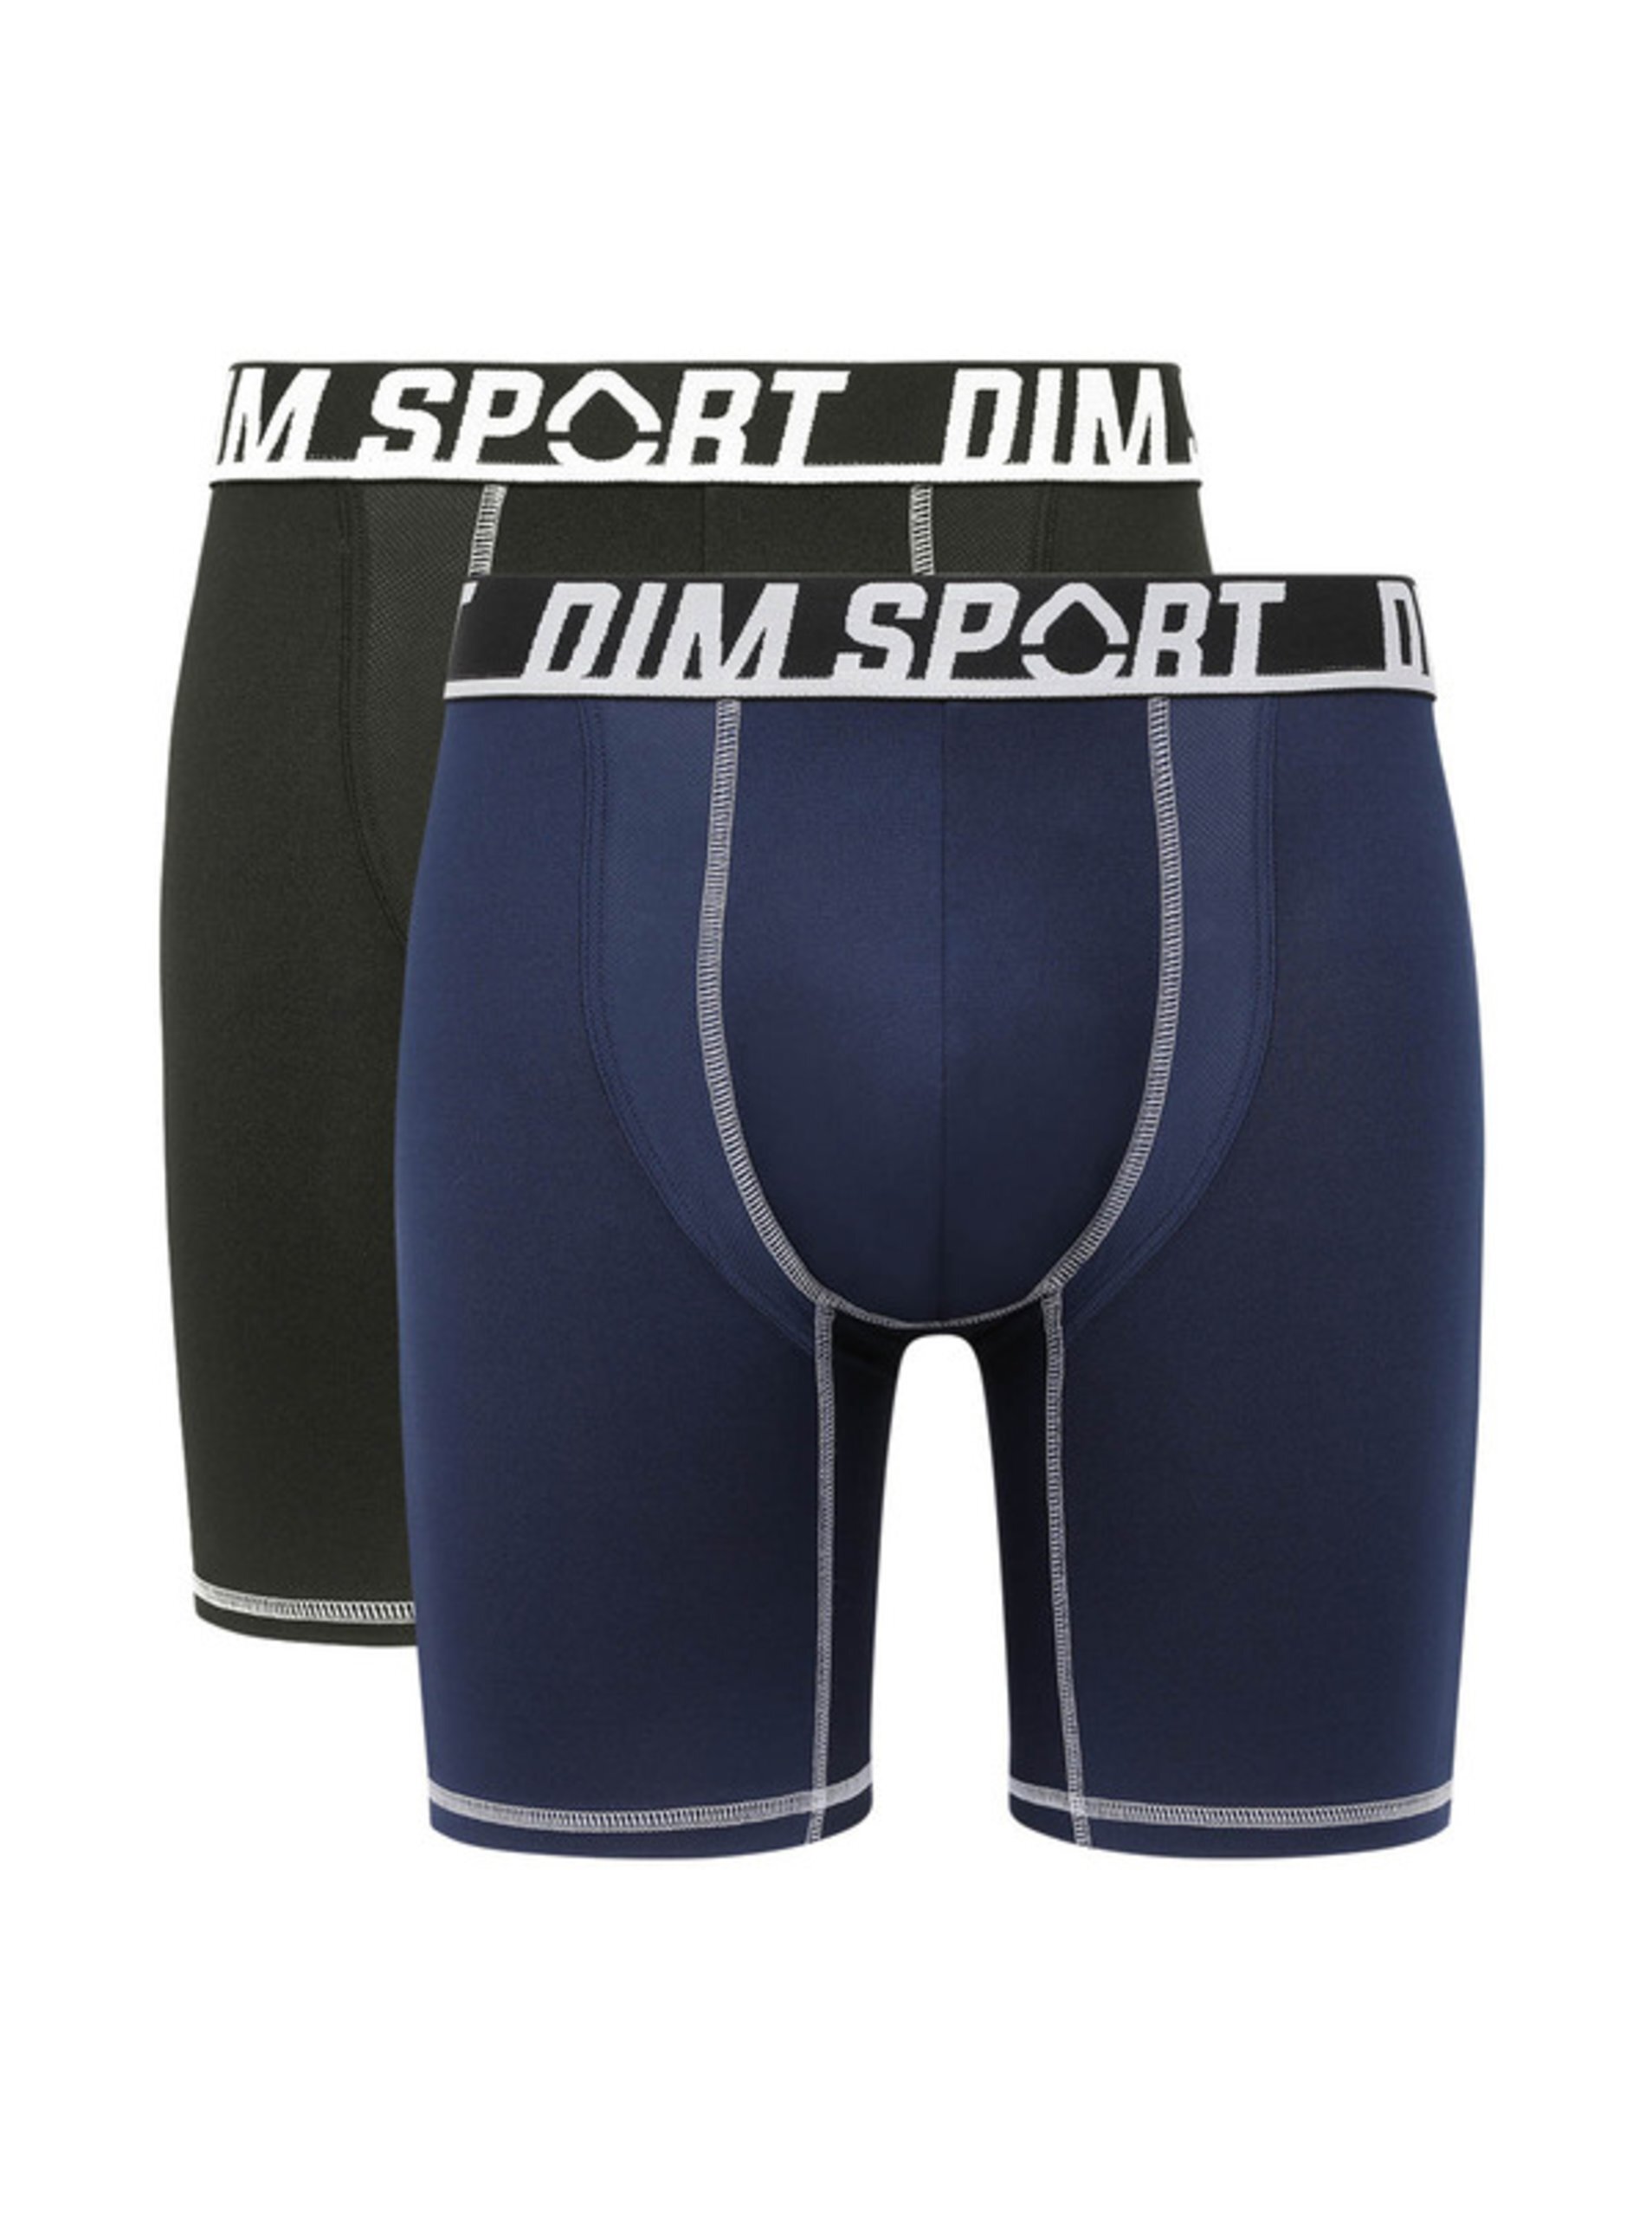 Levně Sada dvou pánských sportovních boxerek v černé a tmavě modré barvě DIM SPORT LONG BOXER 2x